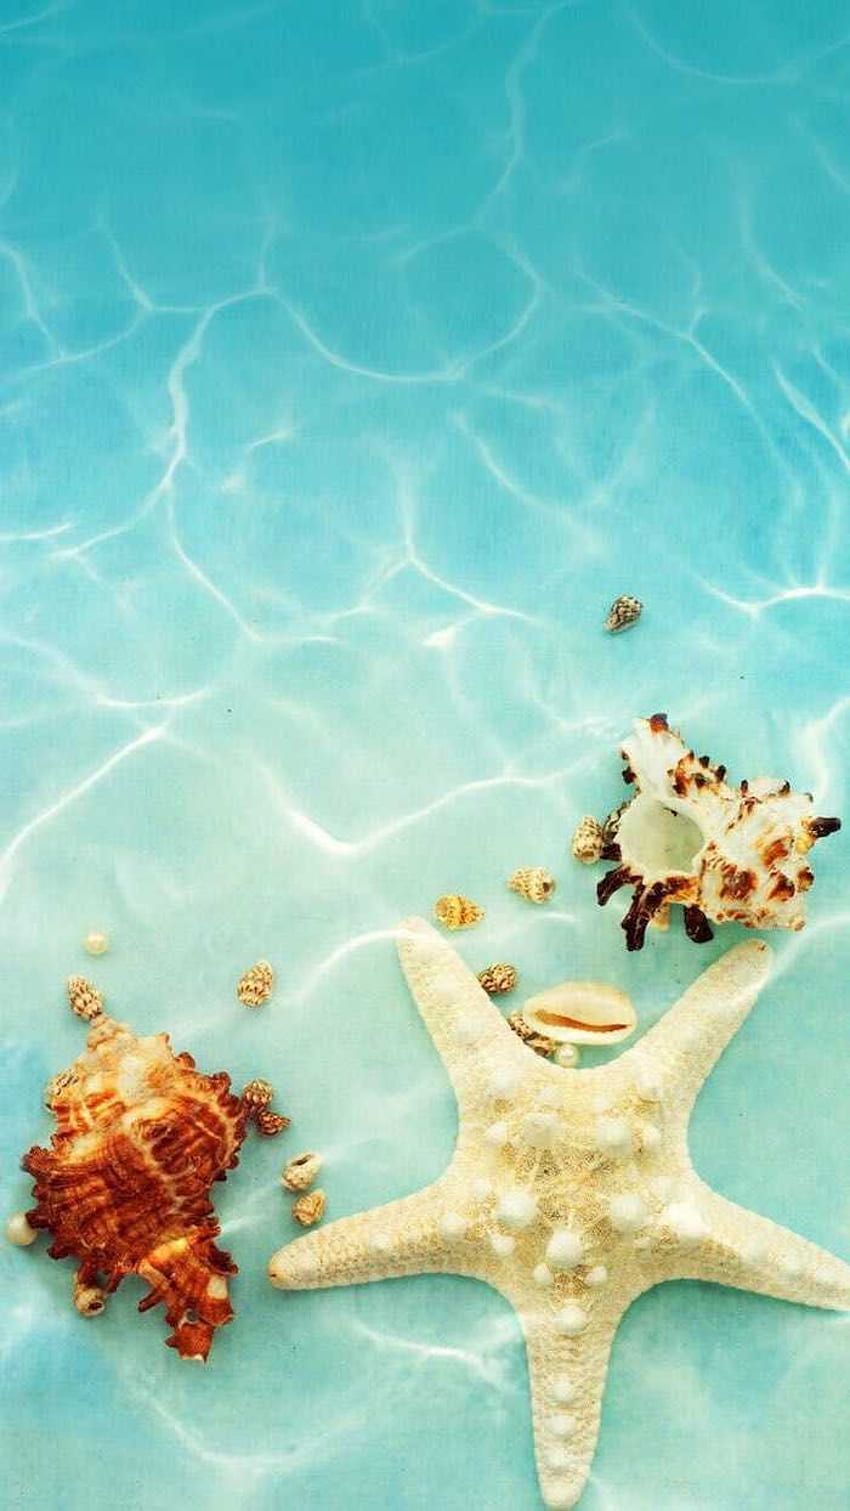 A starfish and seashells in the water - Summer, water, beach, underwater, starfish